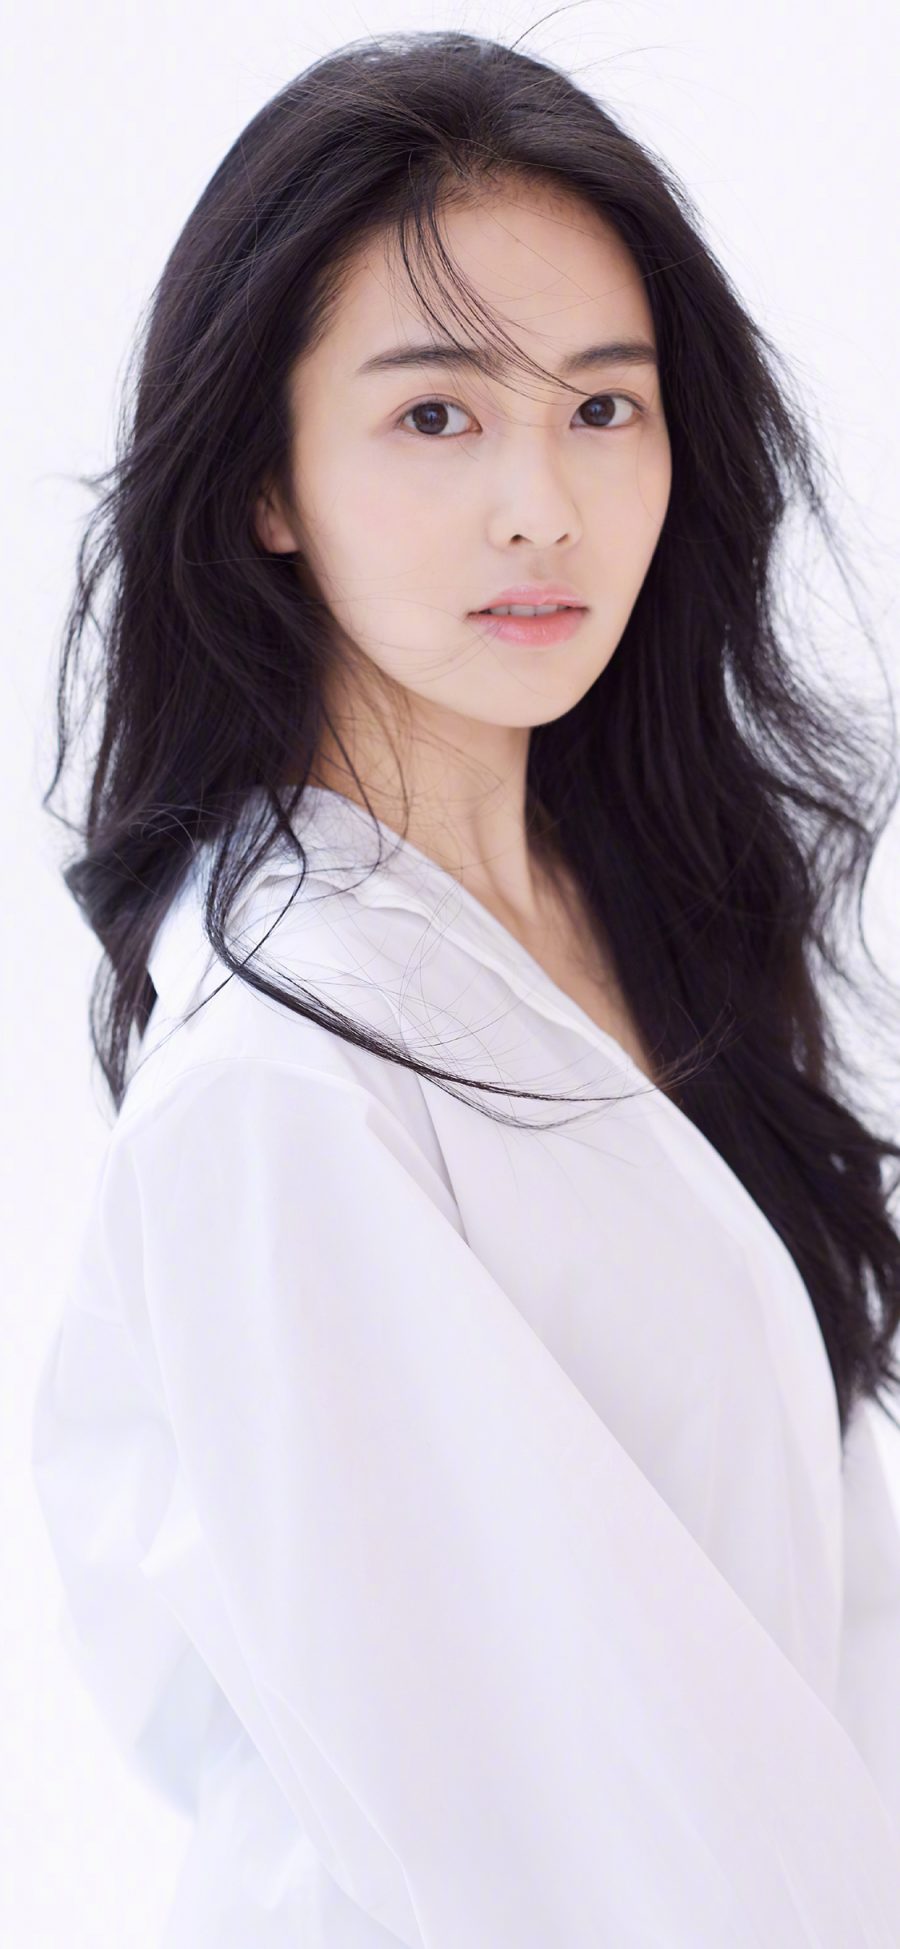 [2436×1125]白梦妍 白鹿 演员 模特 明星 艺人 苹果手机美女壁纸图片